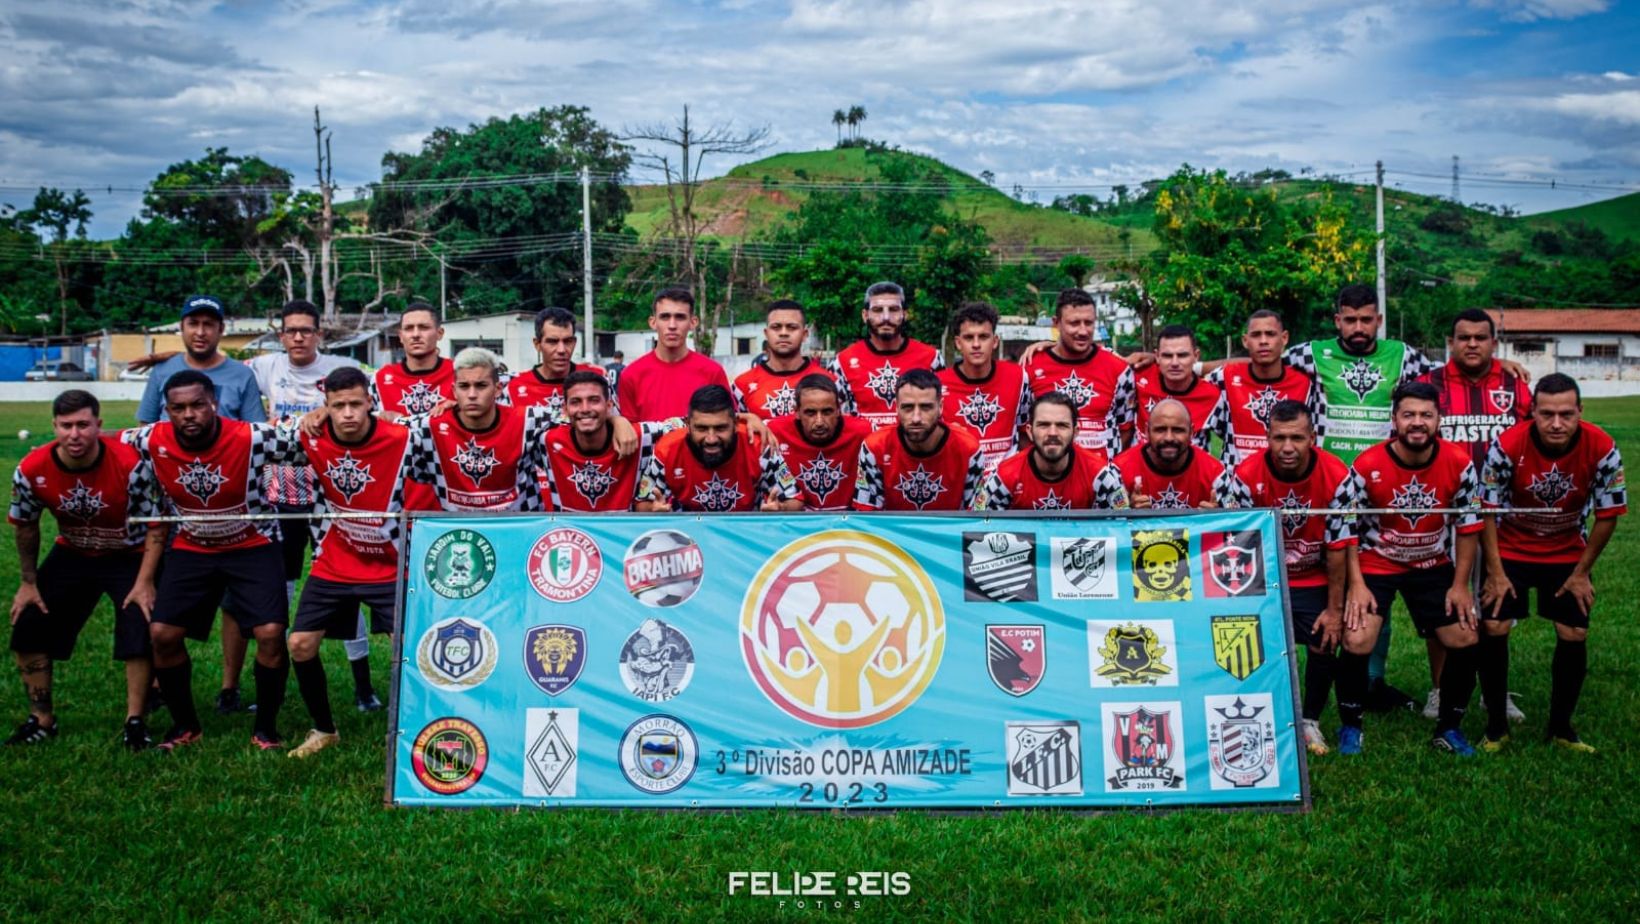 Câmara Municipal de Guaratinguetá aprova projeto de lei reconhecendo a “Copa da Amizade” como competição oficial do futebol amador no município